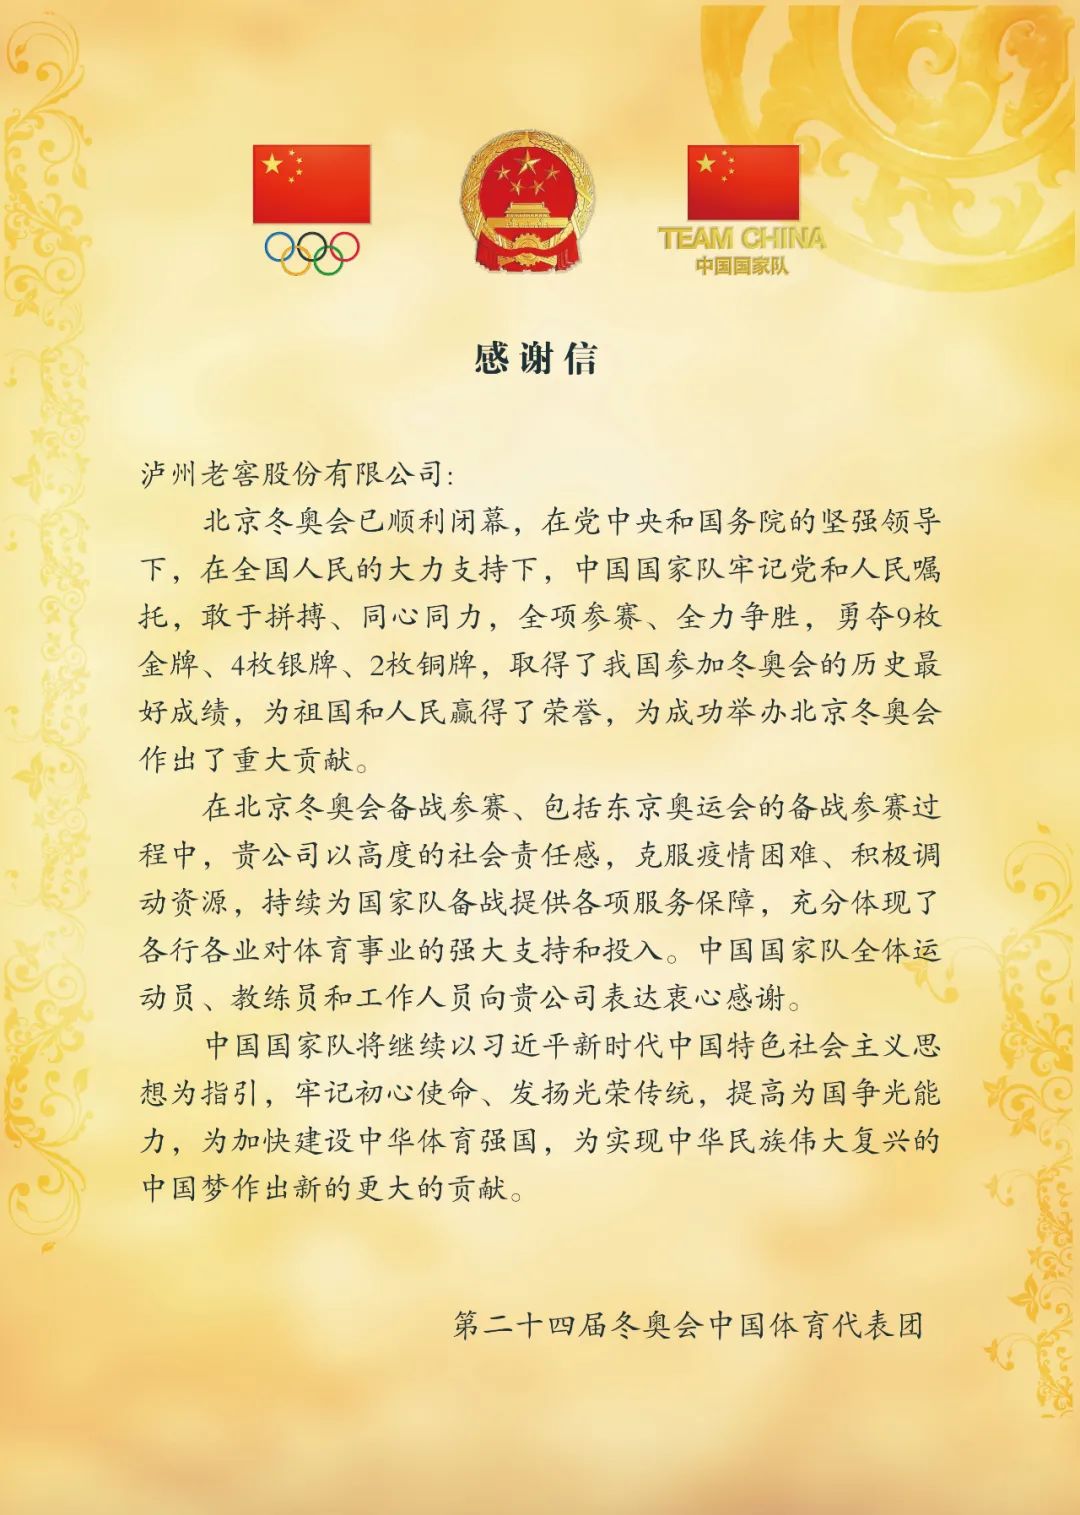 冬奥中国体育代表团为泸州老窖助力体育点赞